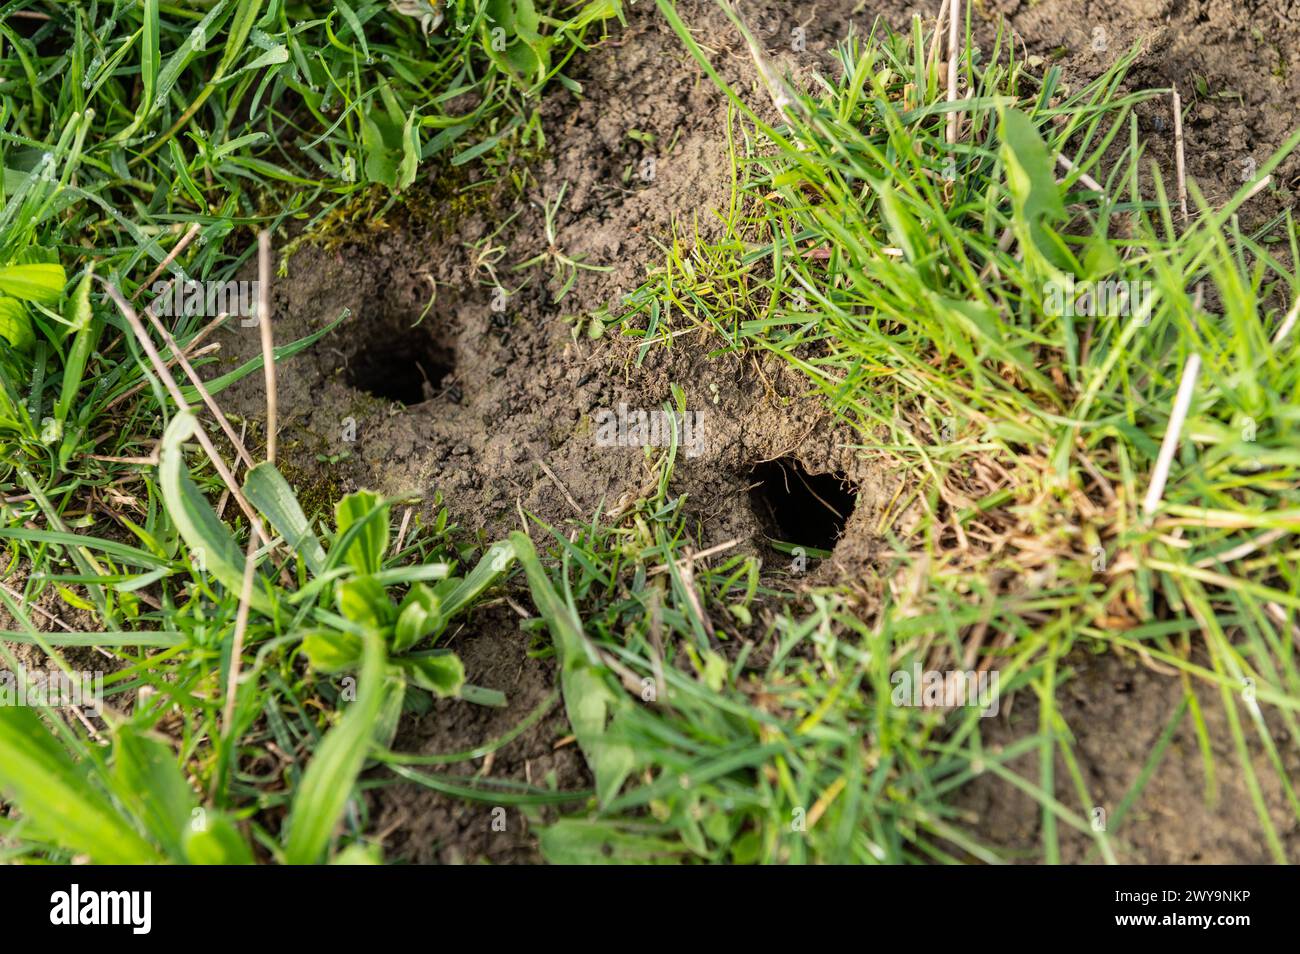 Mäuselöcher sind auf einer Wiese zu sehen. Rottweil Baden-Württemberg Deutschland *** Mouse holes can be seen in a meadow Rottweil Baden Württemberg Germany Stock Photo